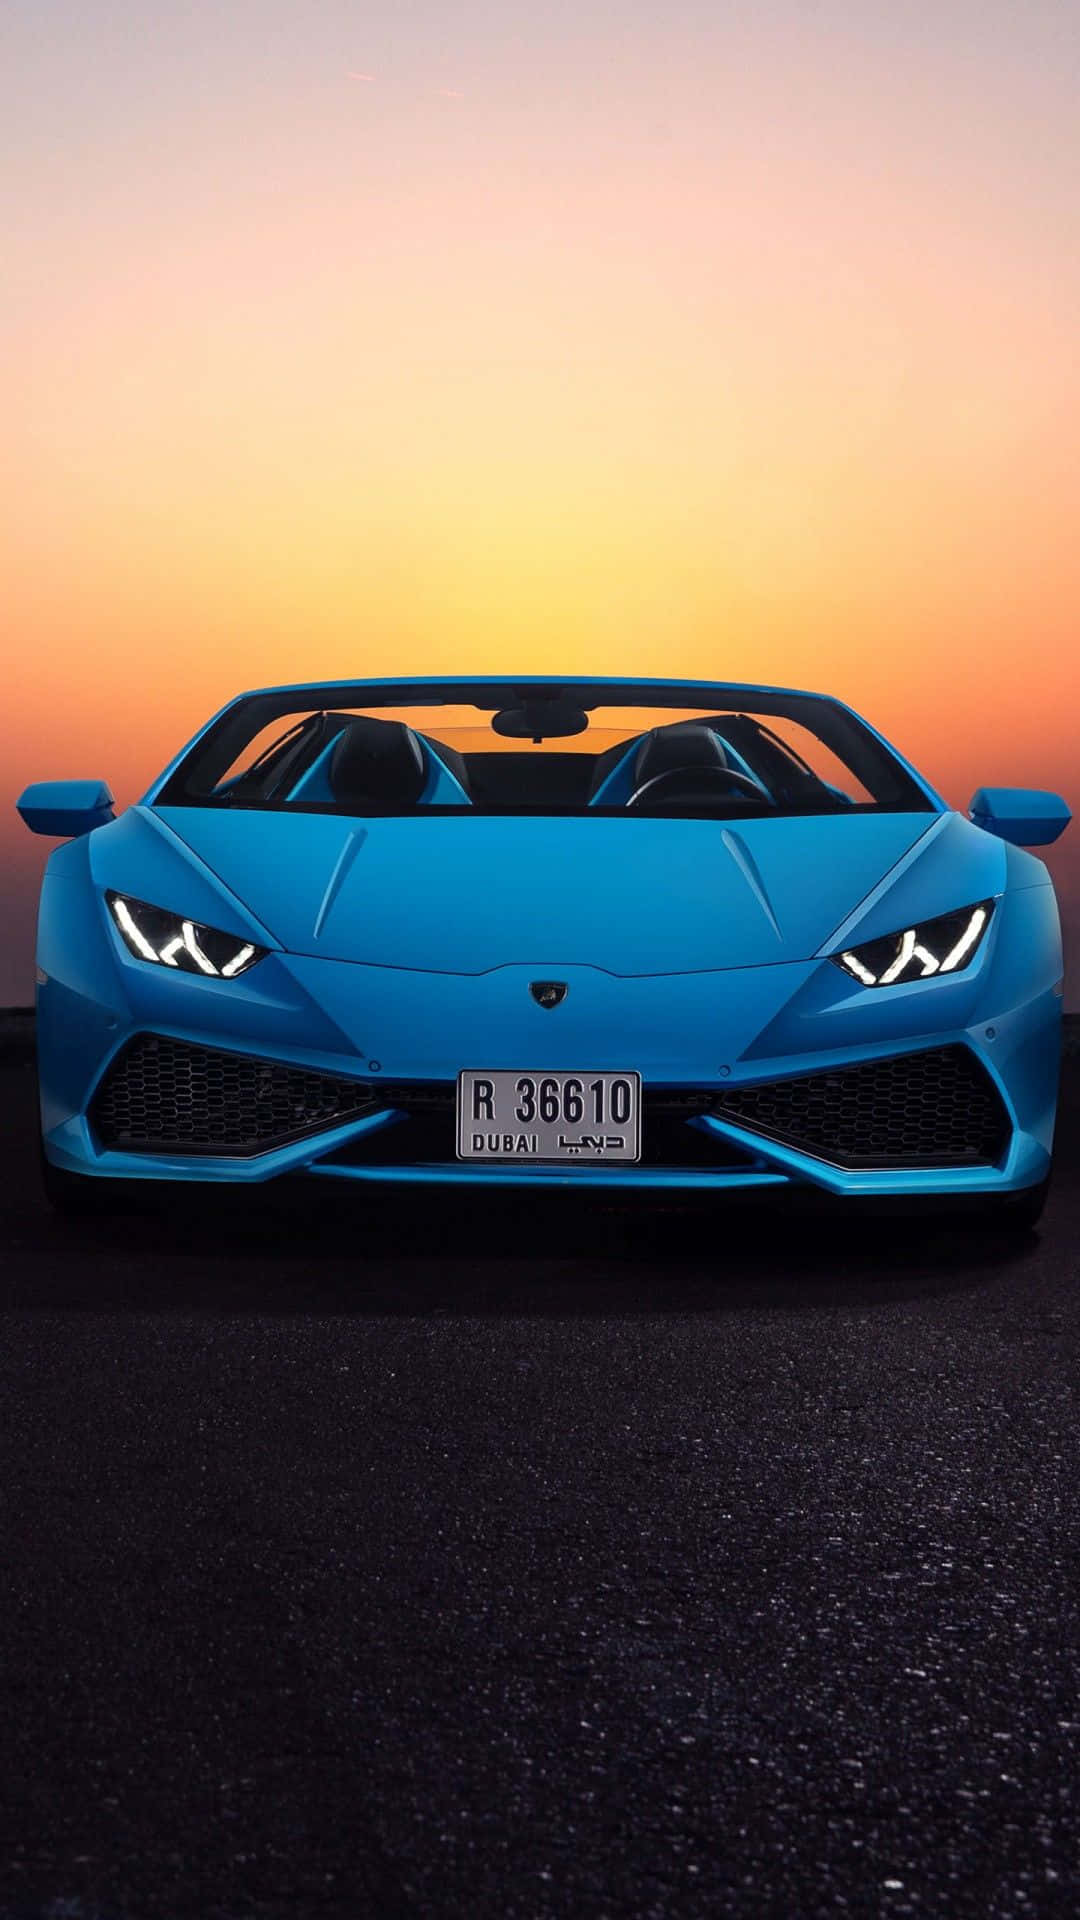 Gør dig klar til at sejle i luksus med dette ved første øjekast blå Lamborghini! Wallpaper